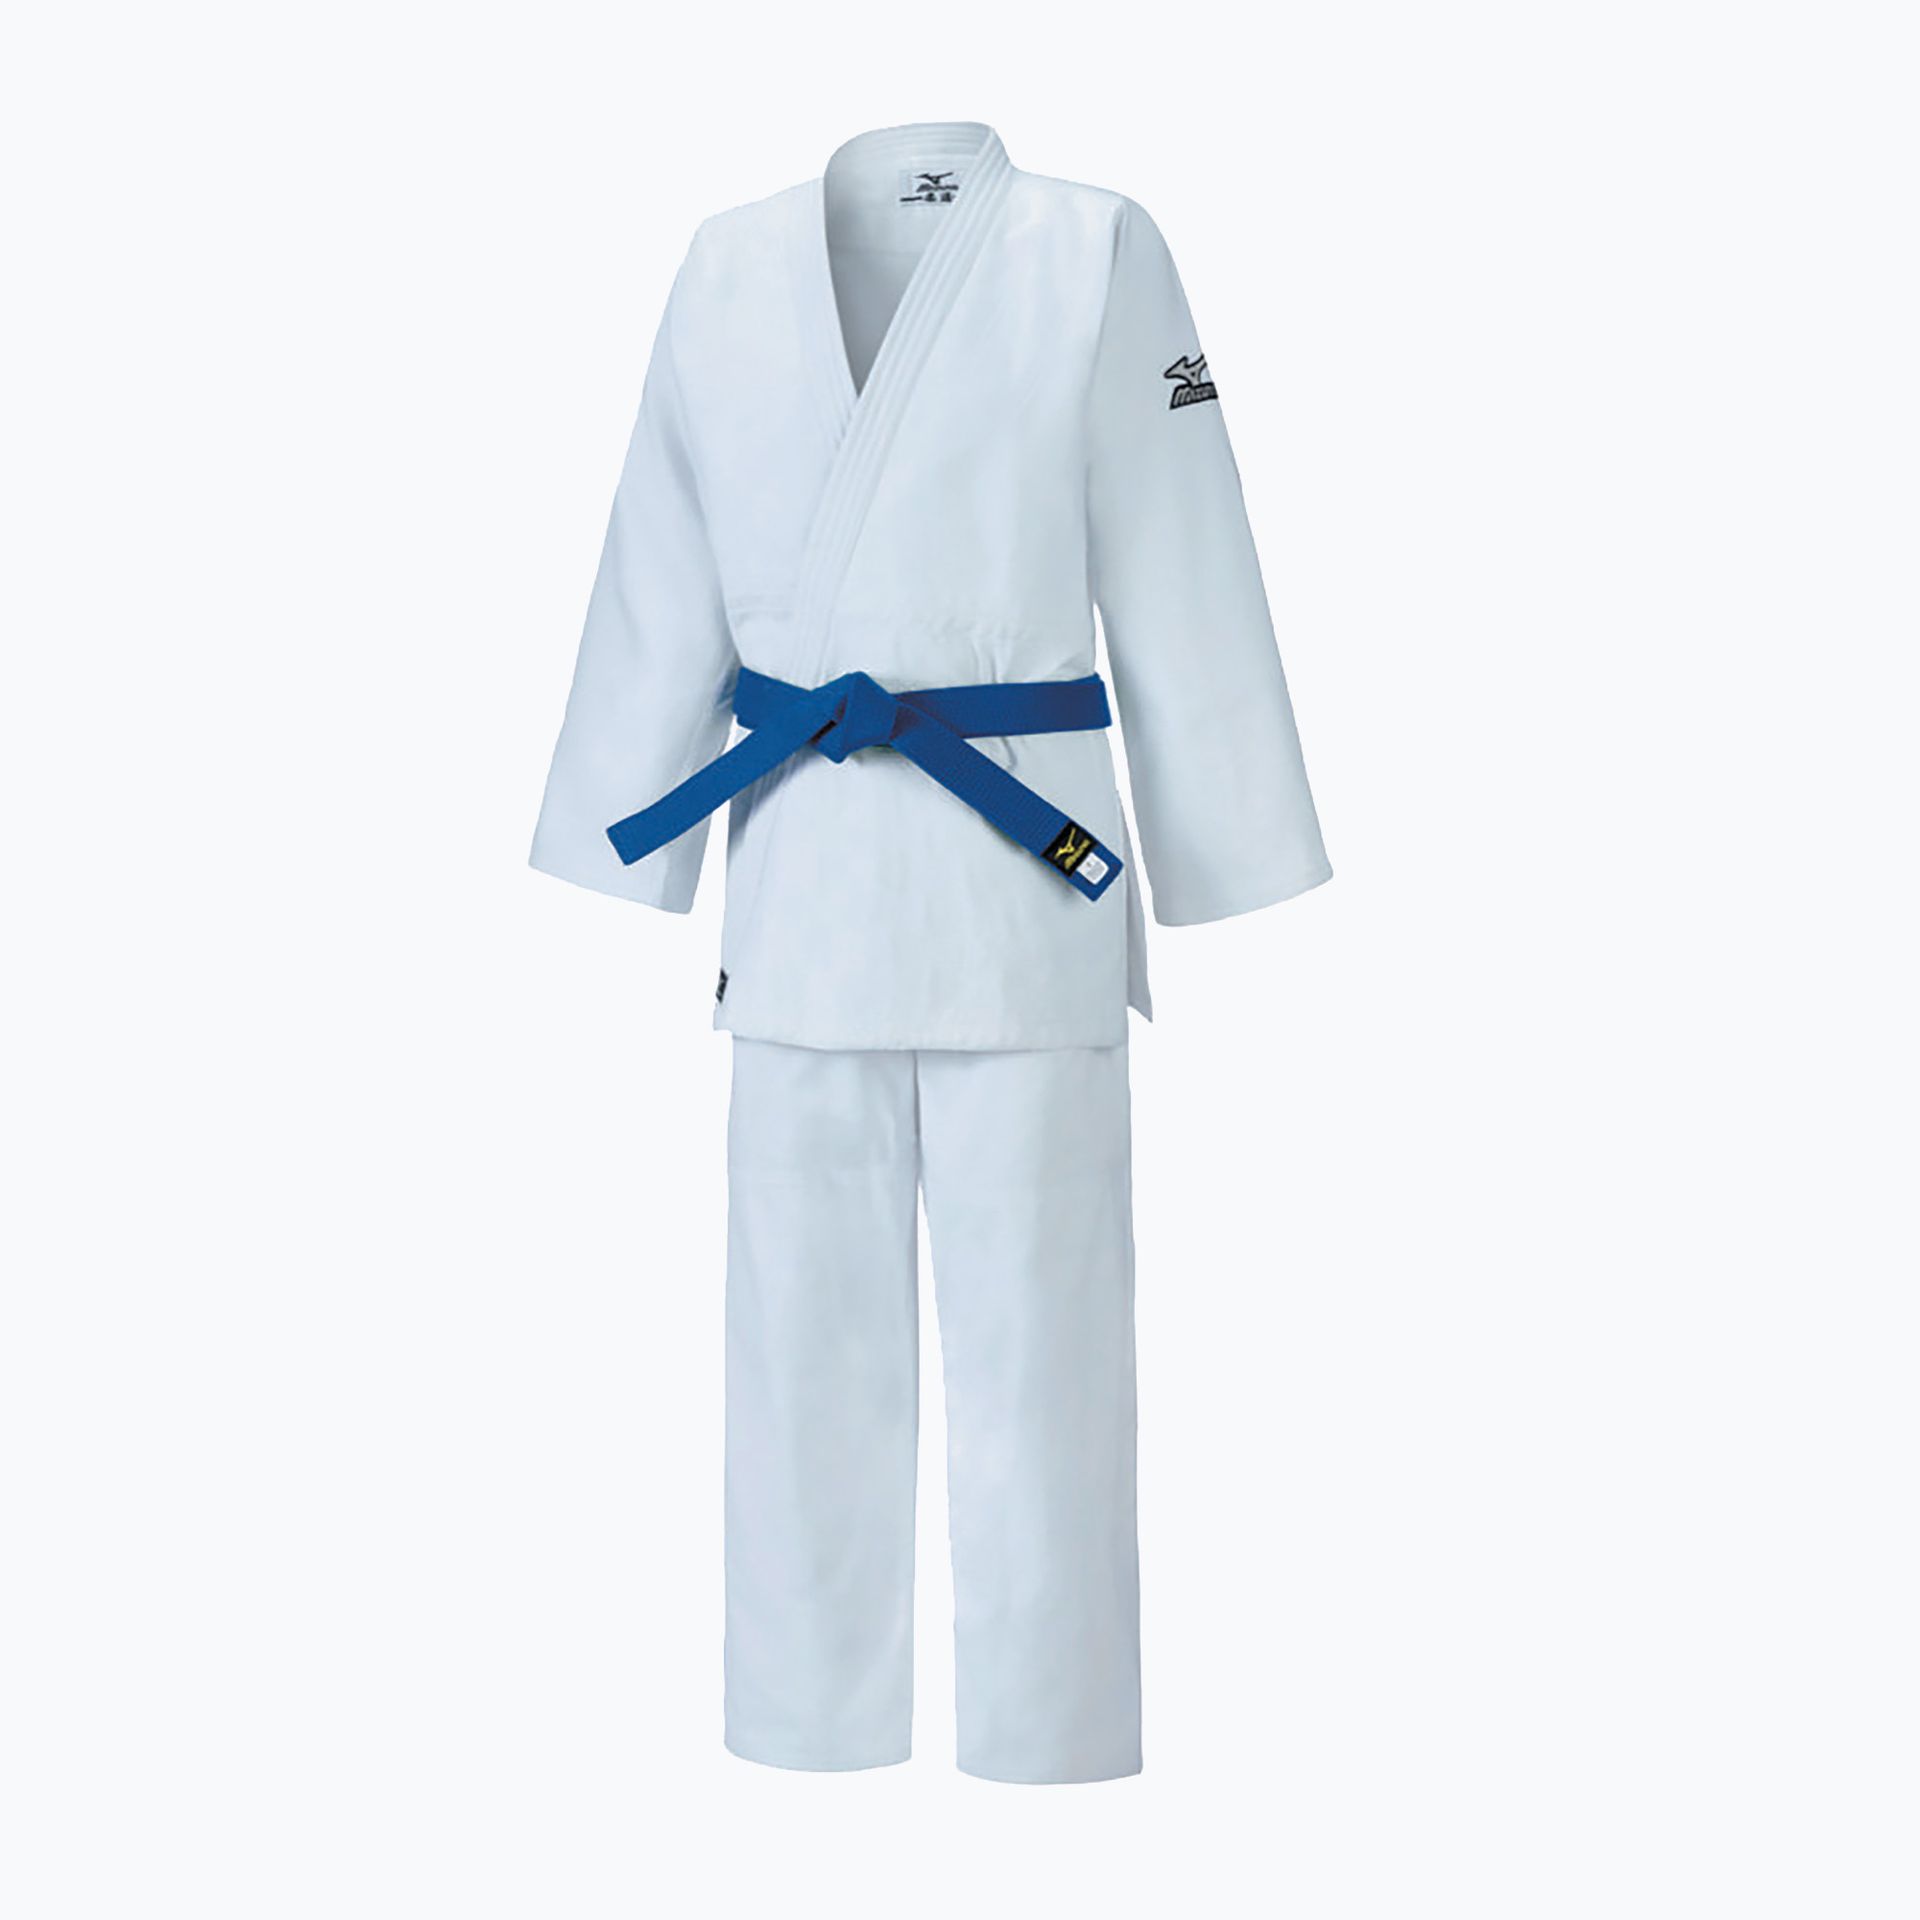 Zdjęcia - Ubrania do sportów walki Mizuno Judoga  Keiko 2 biała 22GG9A650101Z | WYSYŁKA W 24H | 30 DNI NA ZWRO 